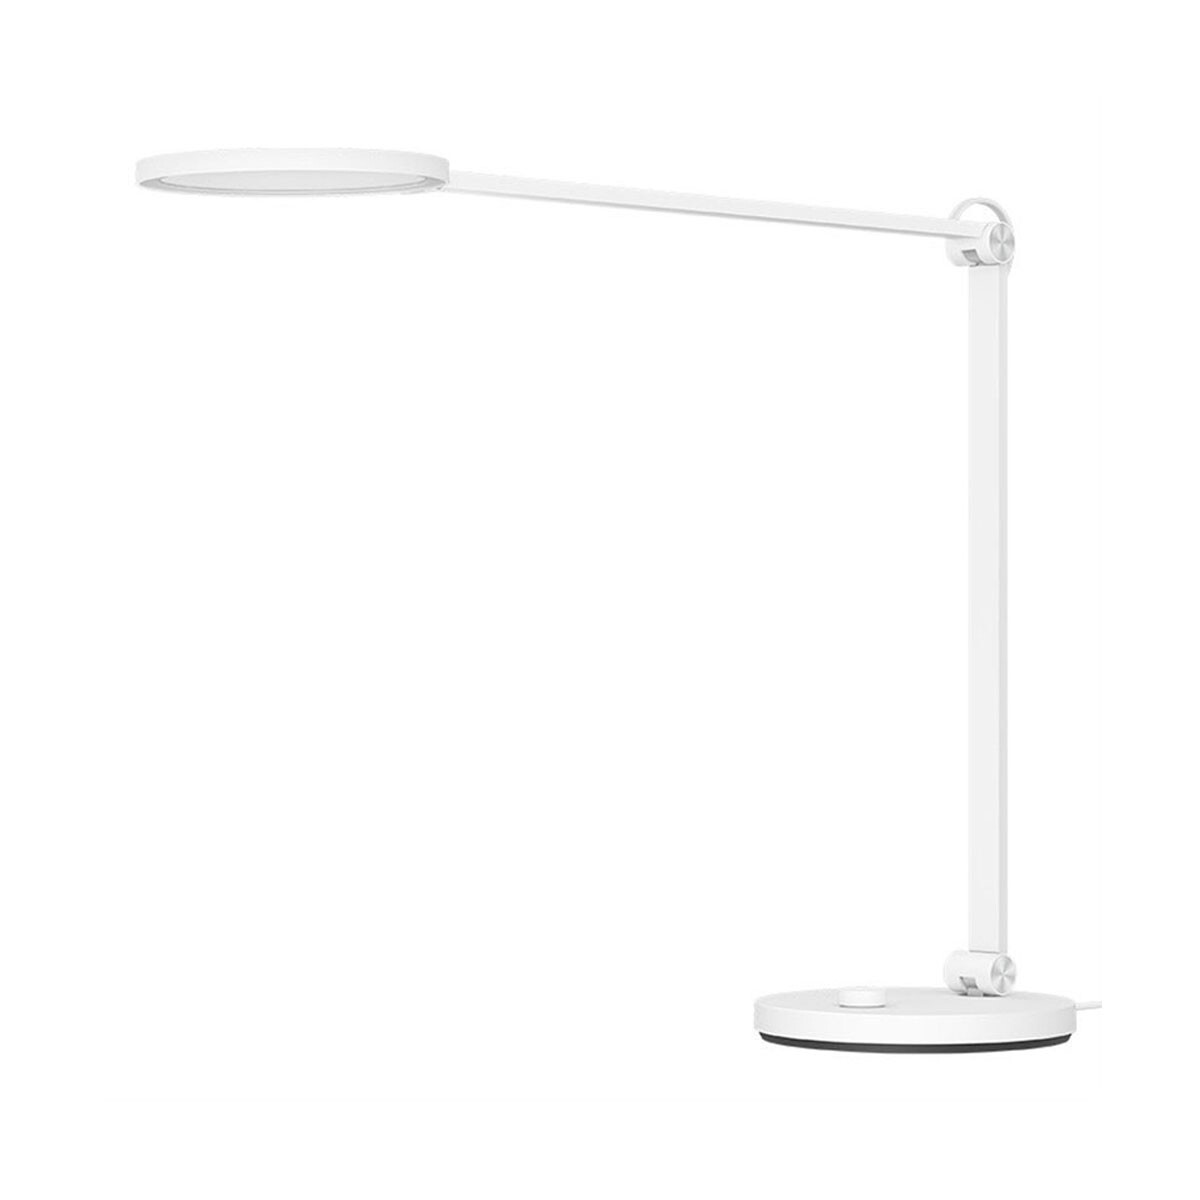 MI SMART LED DESK LAMP PRO XIAOMI | LAMPARA DE ESCRITORIO SMART - Blanco 